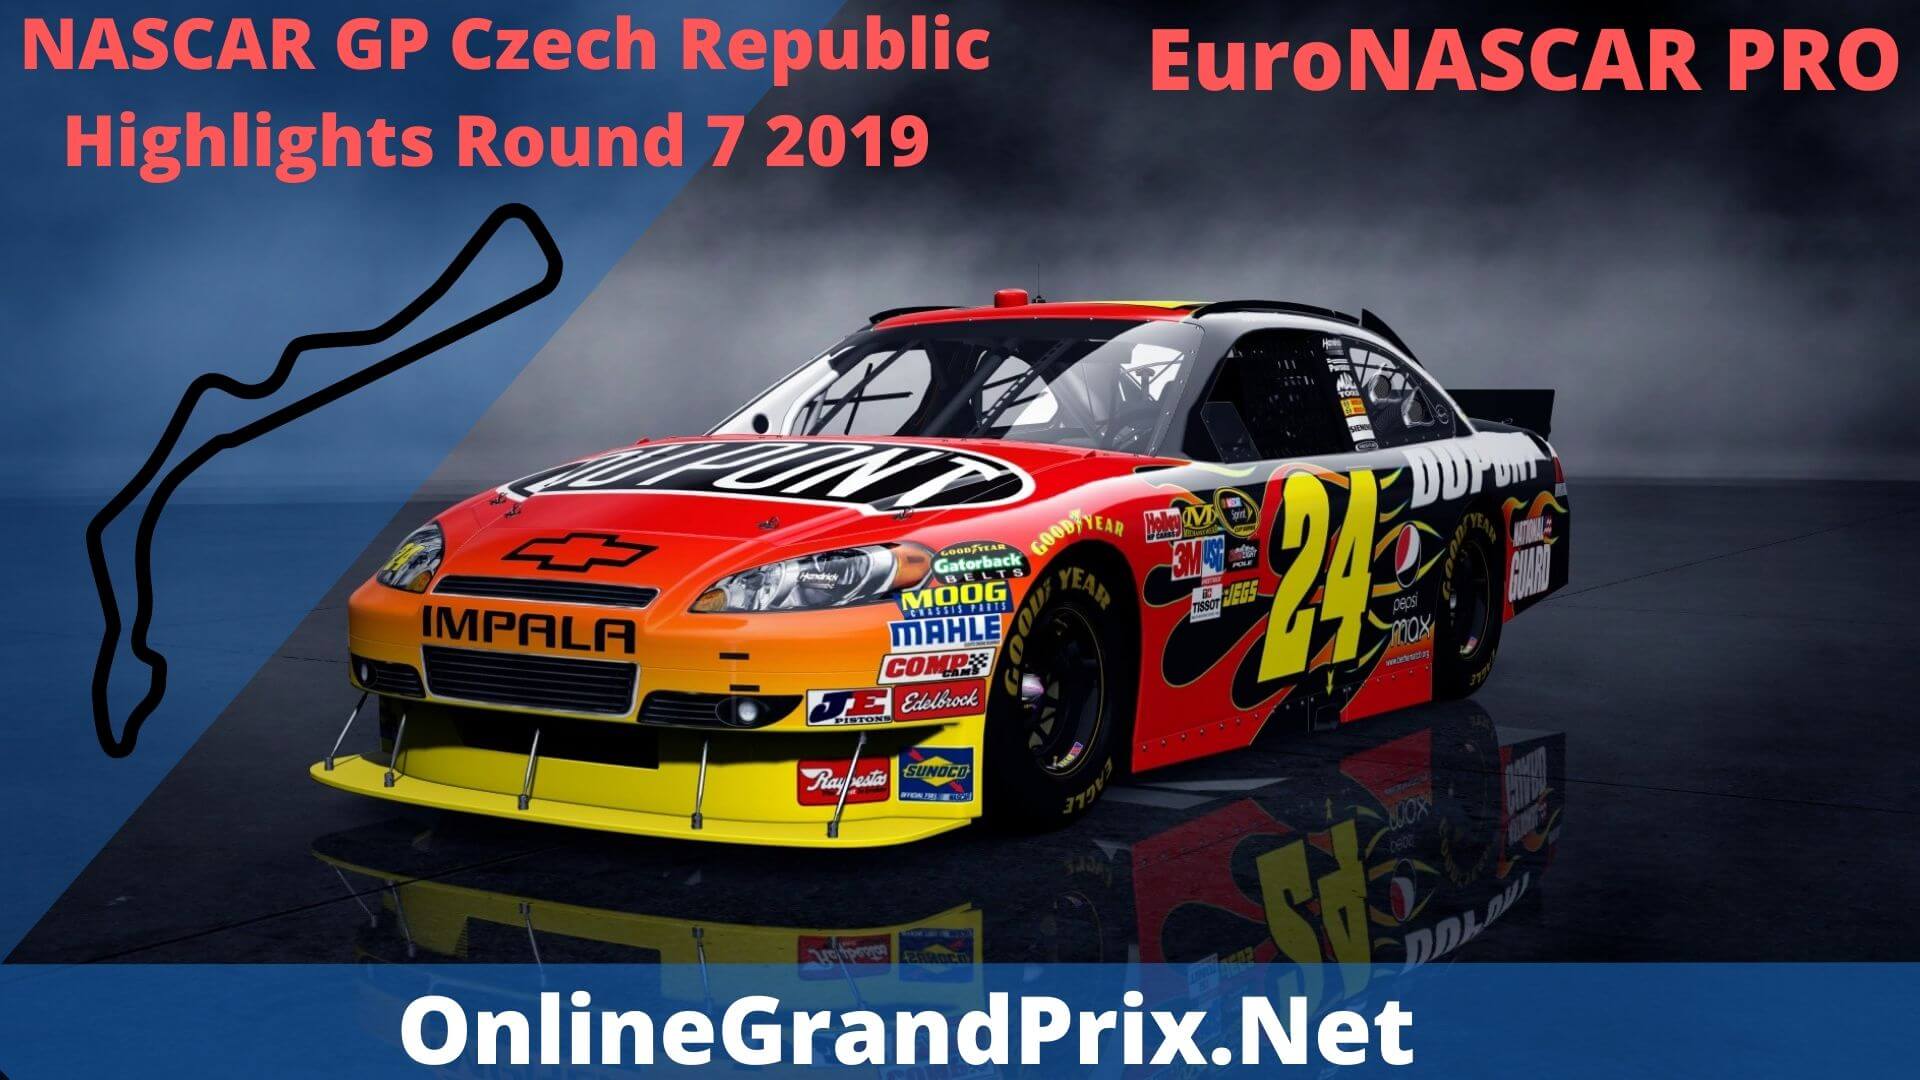 NASCAR GP Czech Republic Round 7 Highlights 2019